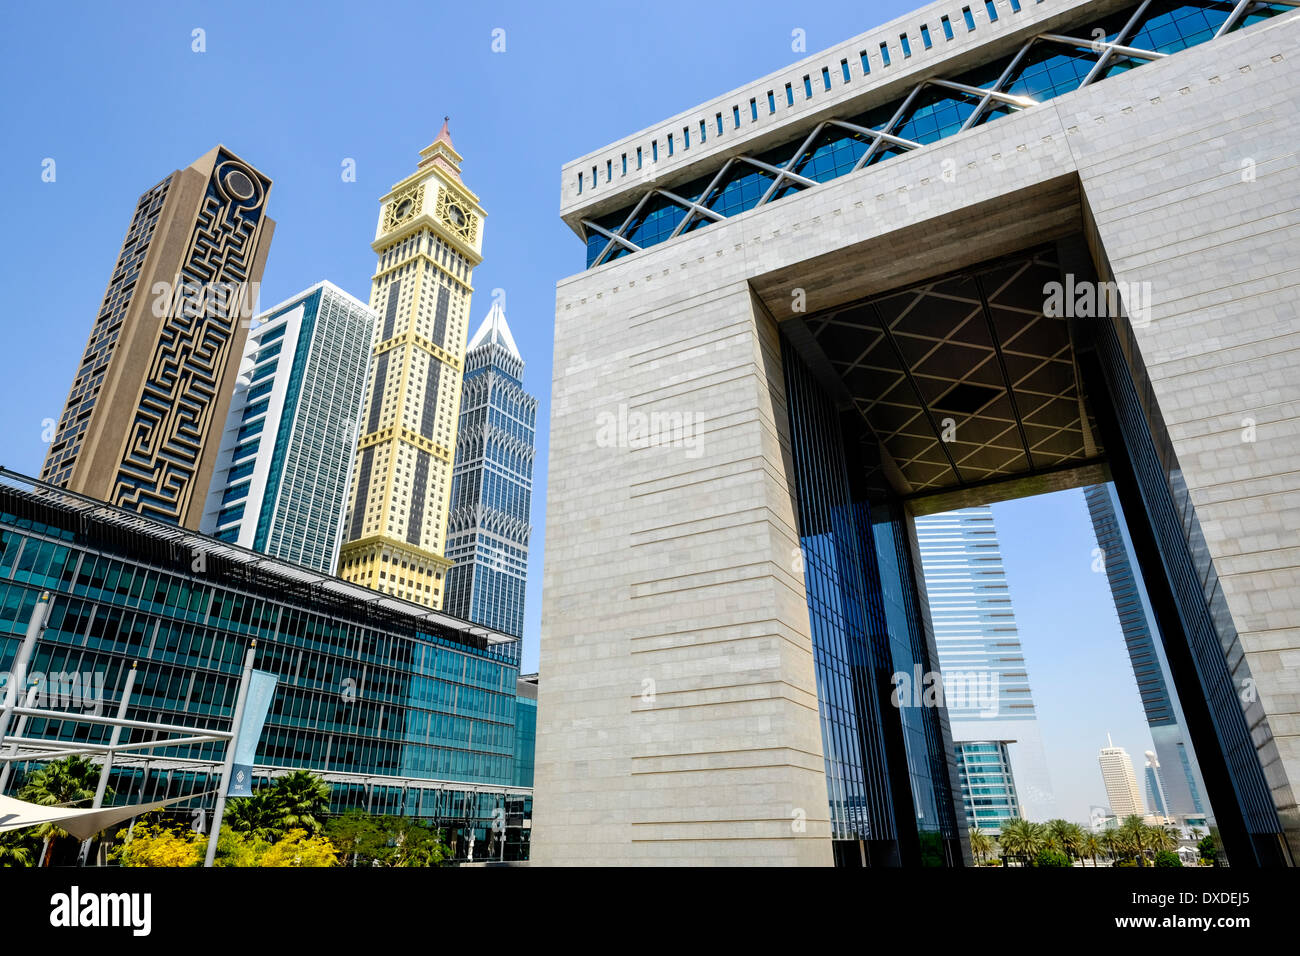 La vista de los modernos rascacielos y la compuerta en el DIFC El Centro Financiero Internacional de Dubai en Dubai, Emiratos Árabes Unidos Foto de stock